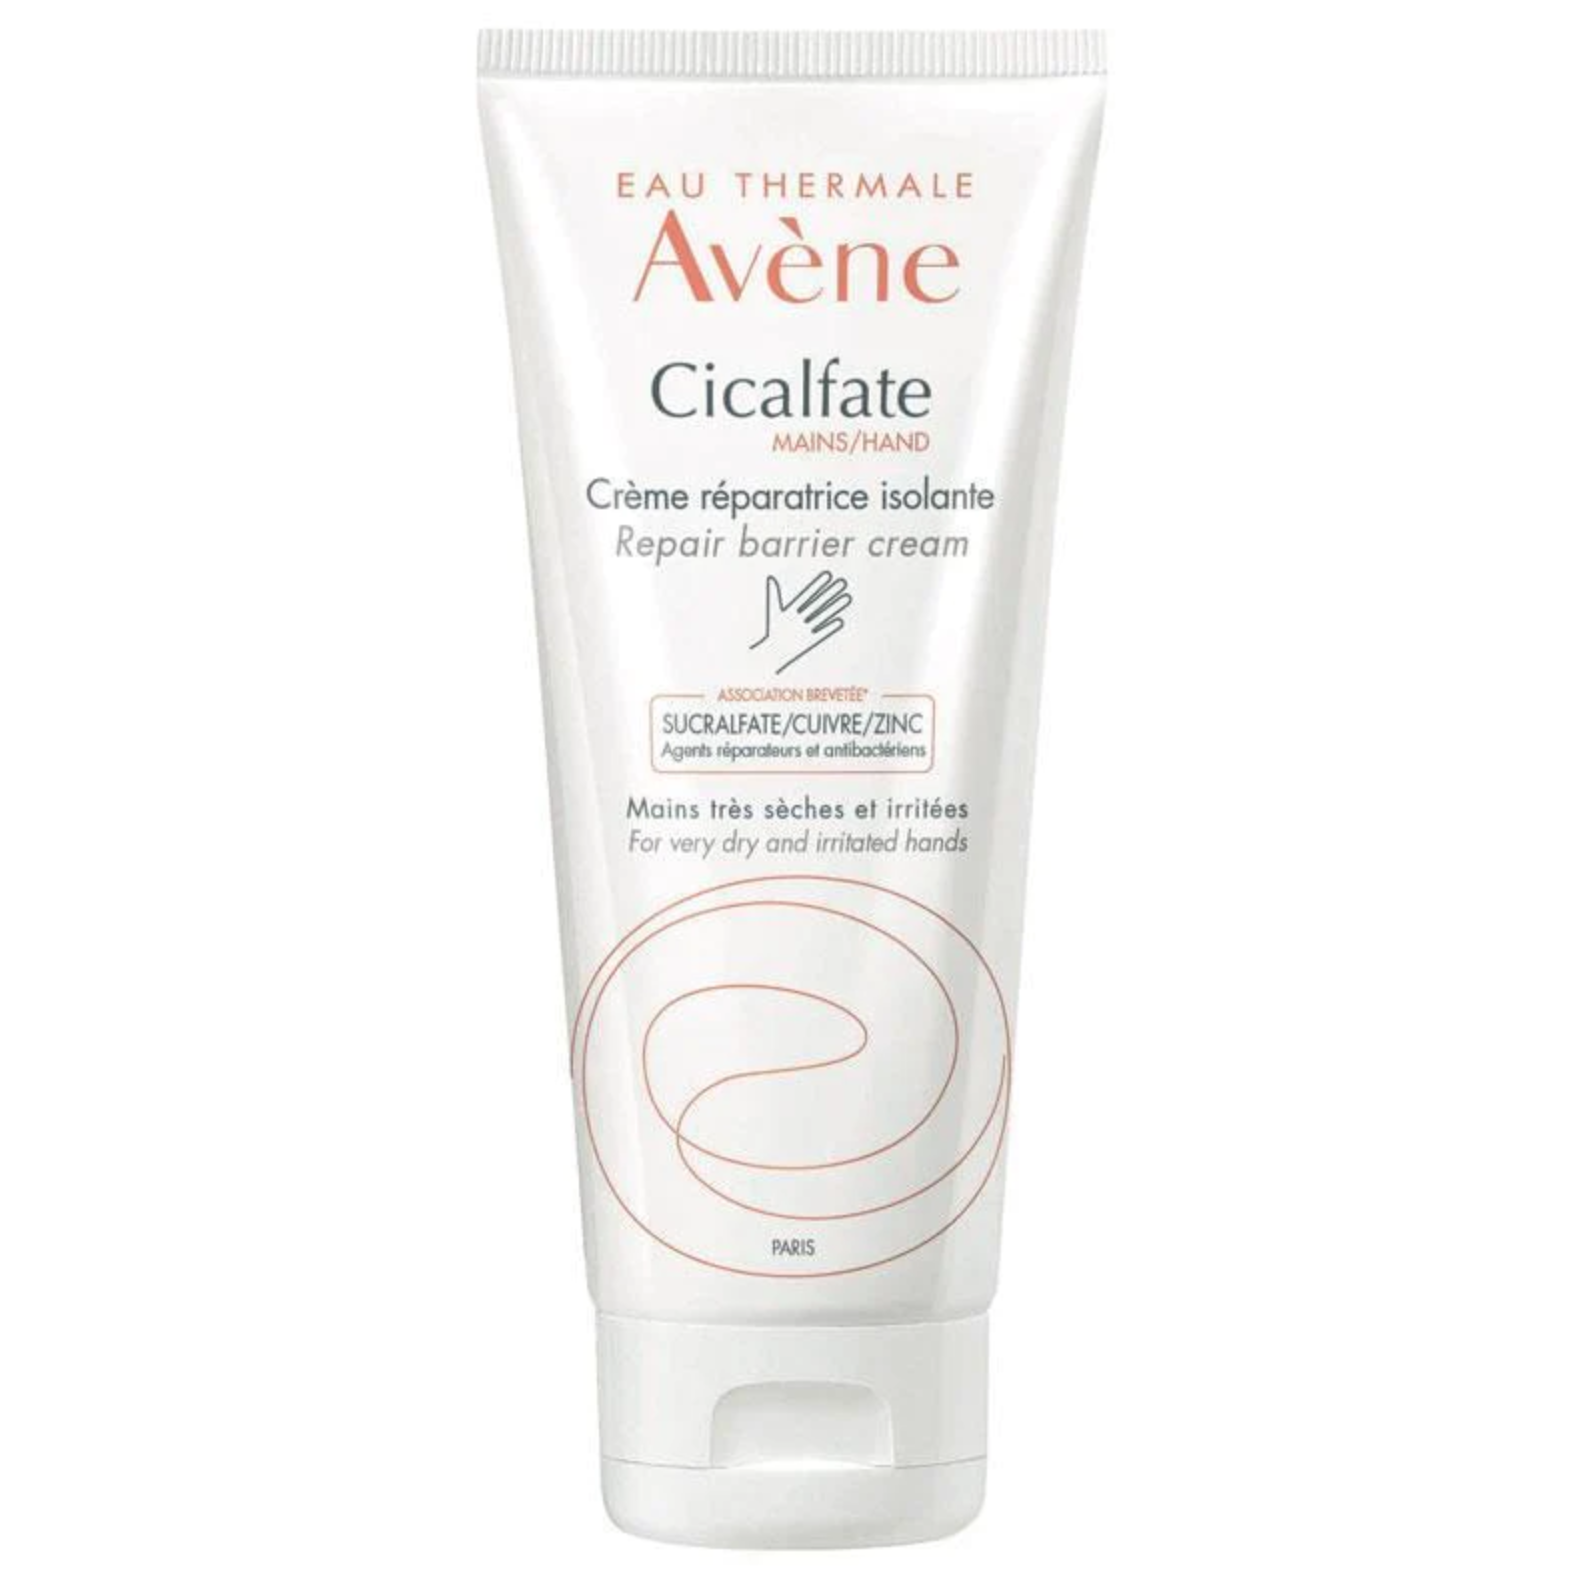 Avene Cicalfate Hand Cream 100 ml 再生修護手霜